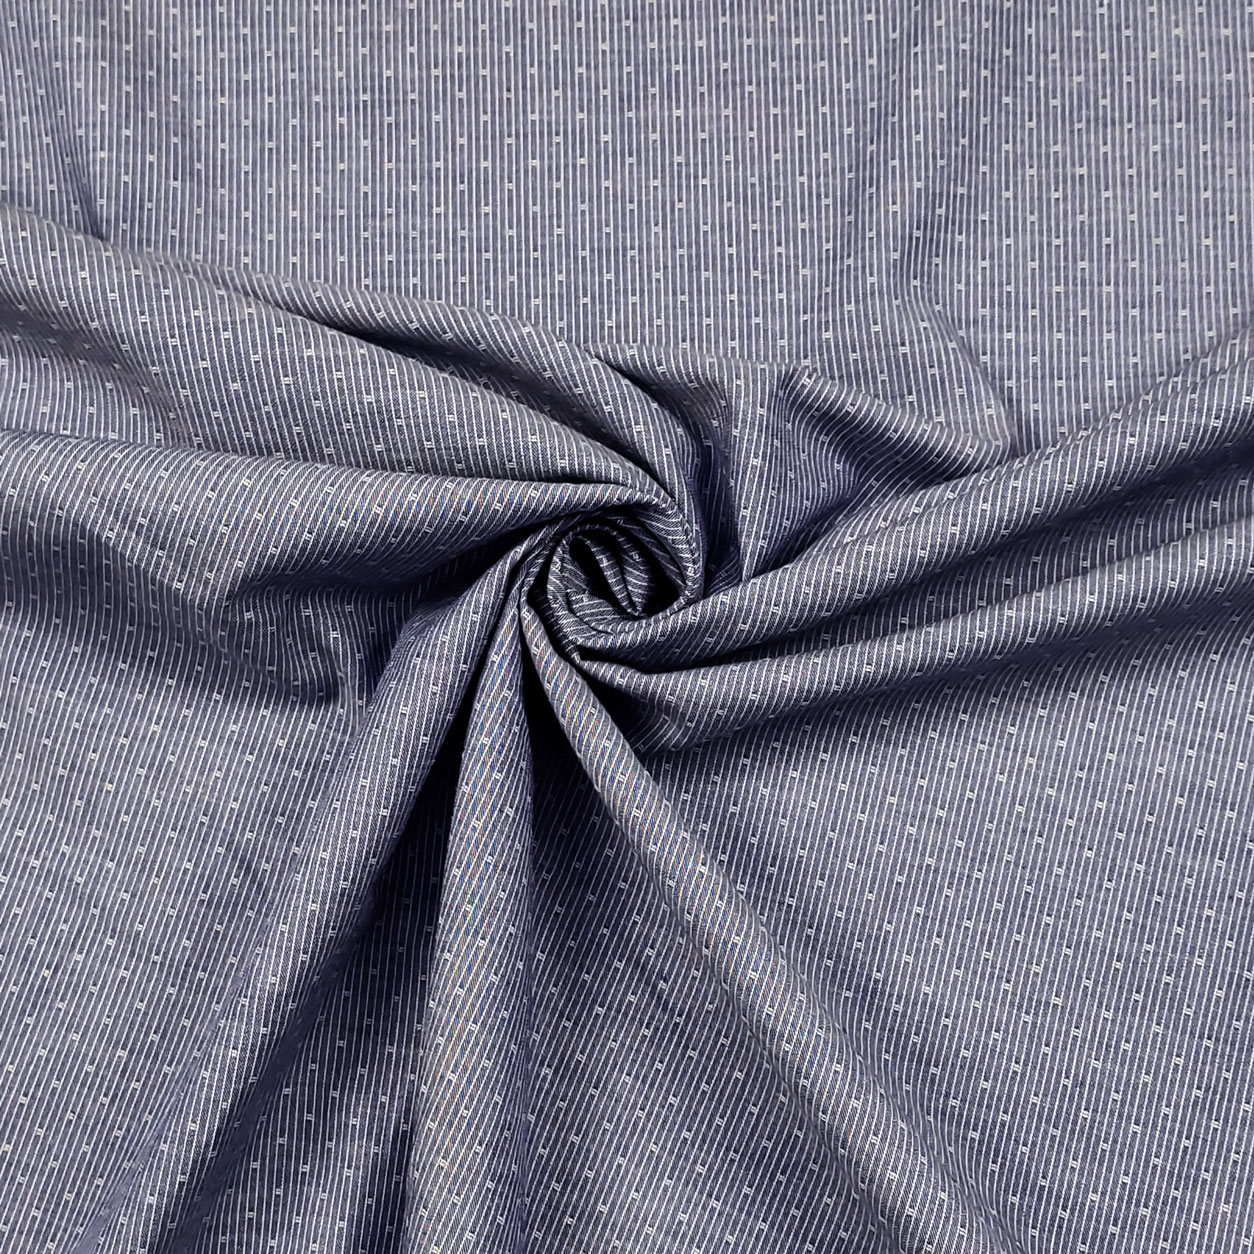 tela-cotone-per-abbigliamento-microfantasia-sfondo-azzurro